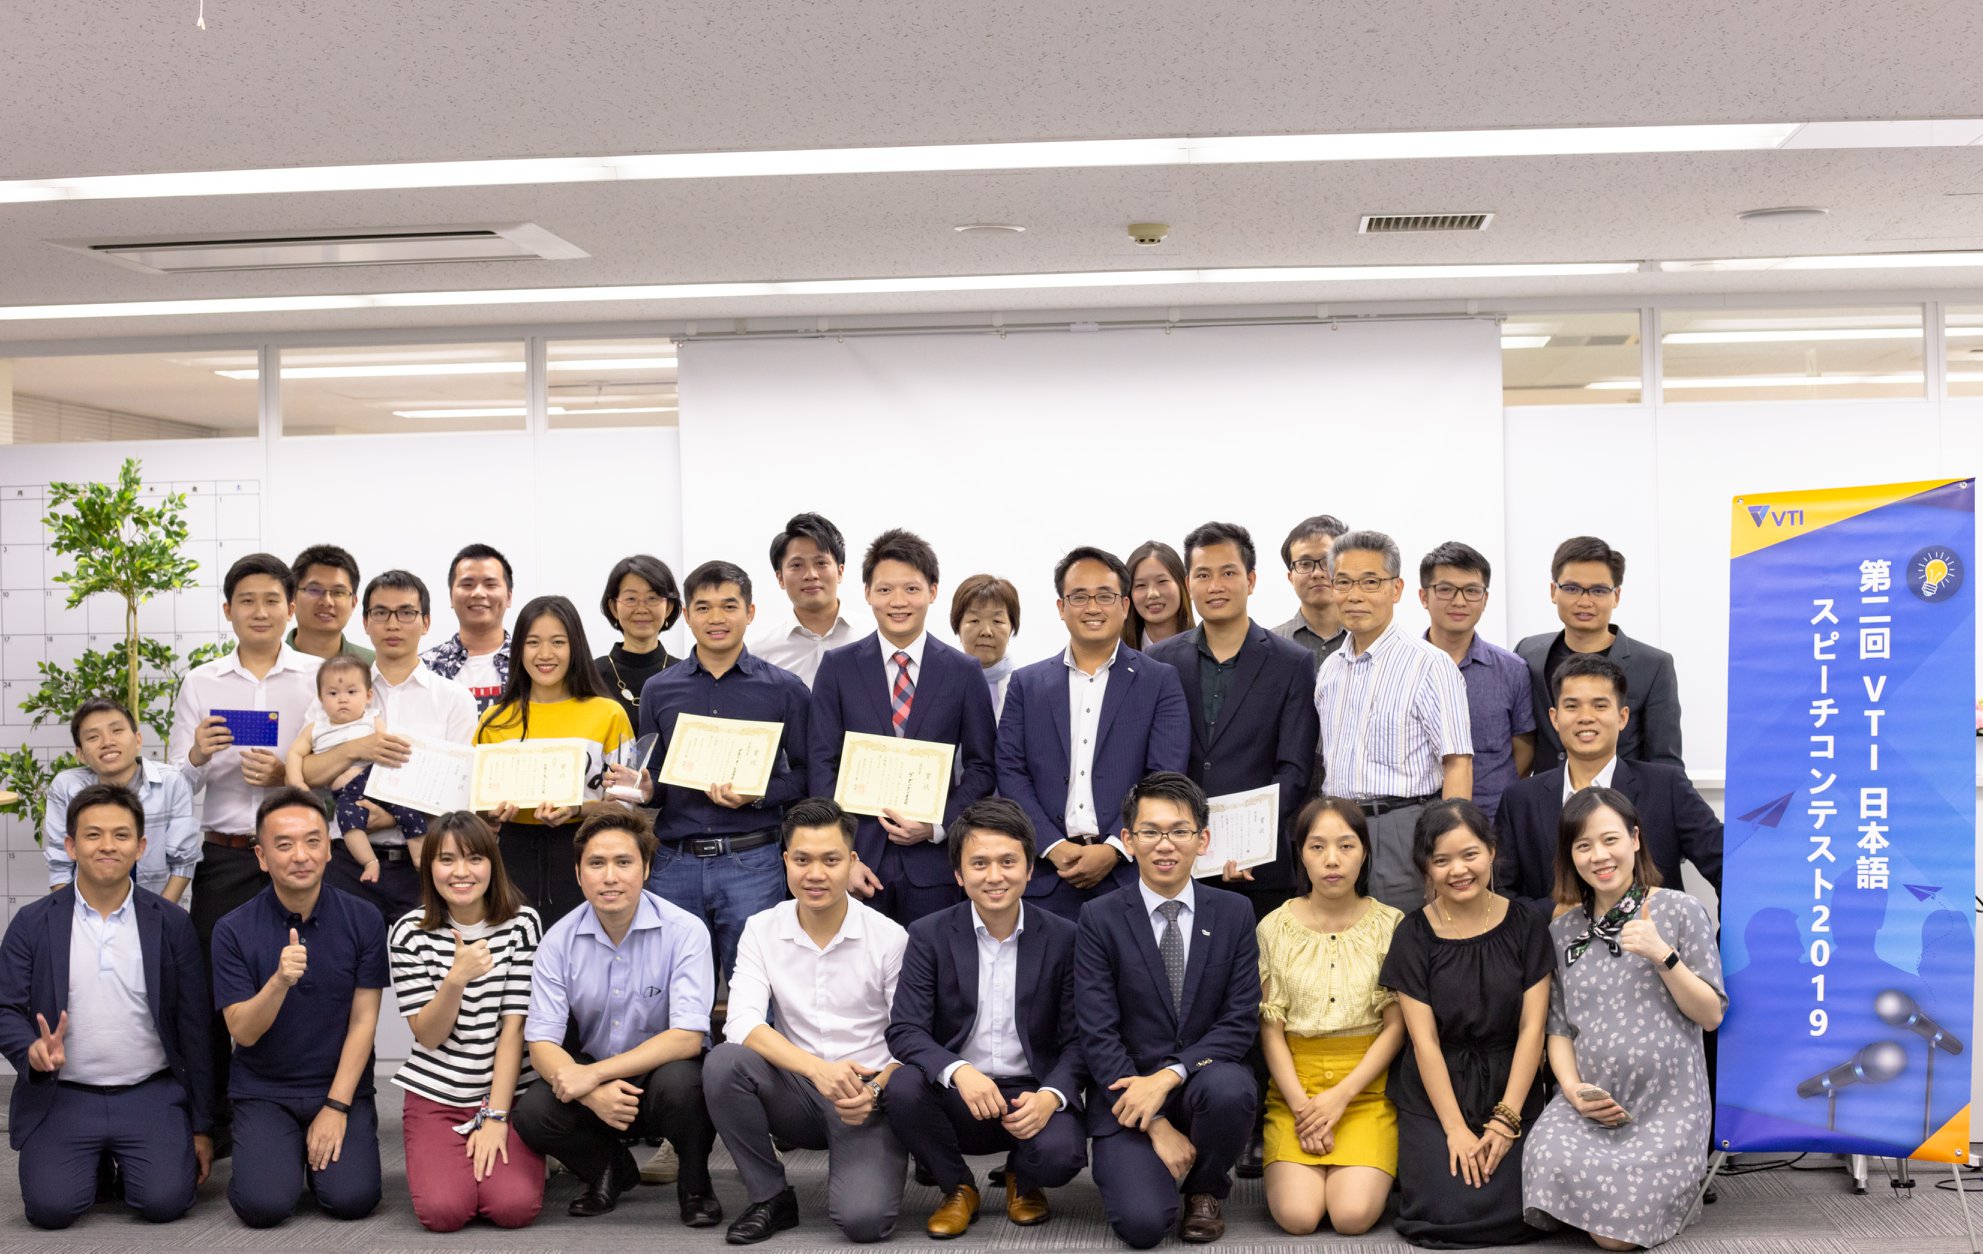 Cuộc thi Hùng biện tiếng Nhật: VTI Nihongo Speech Contest 2019